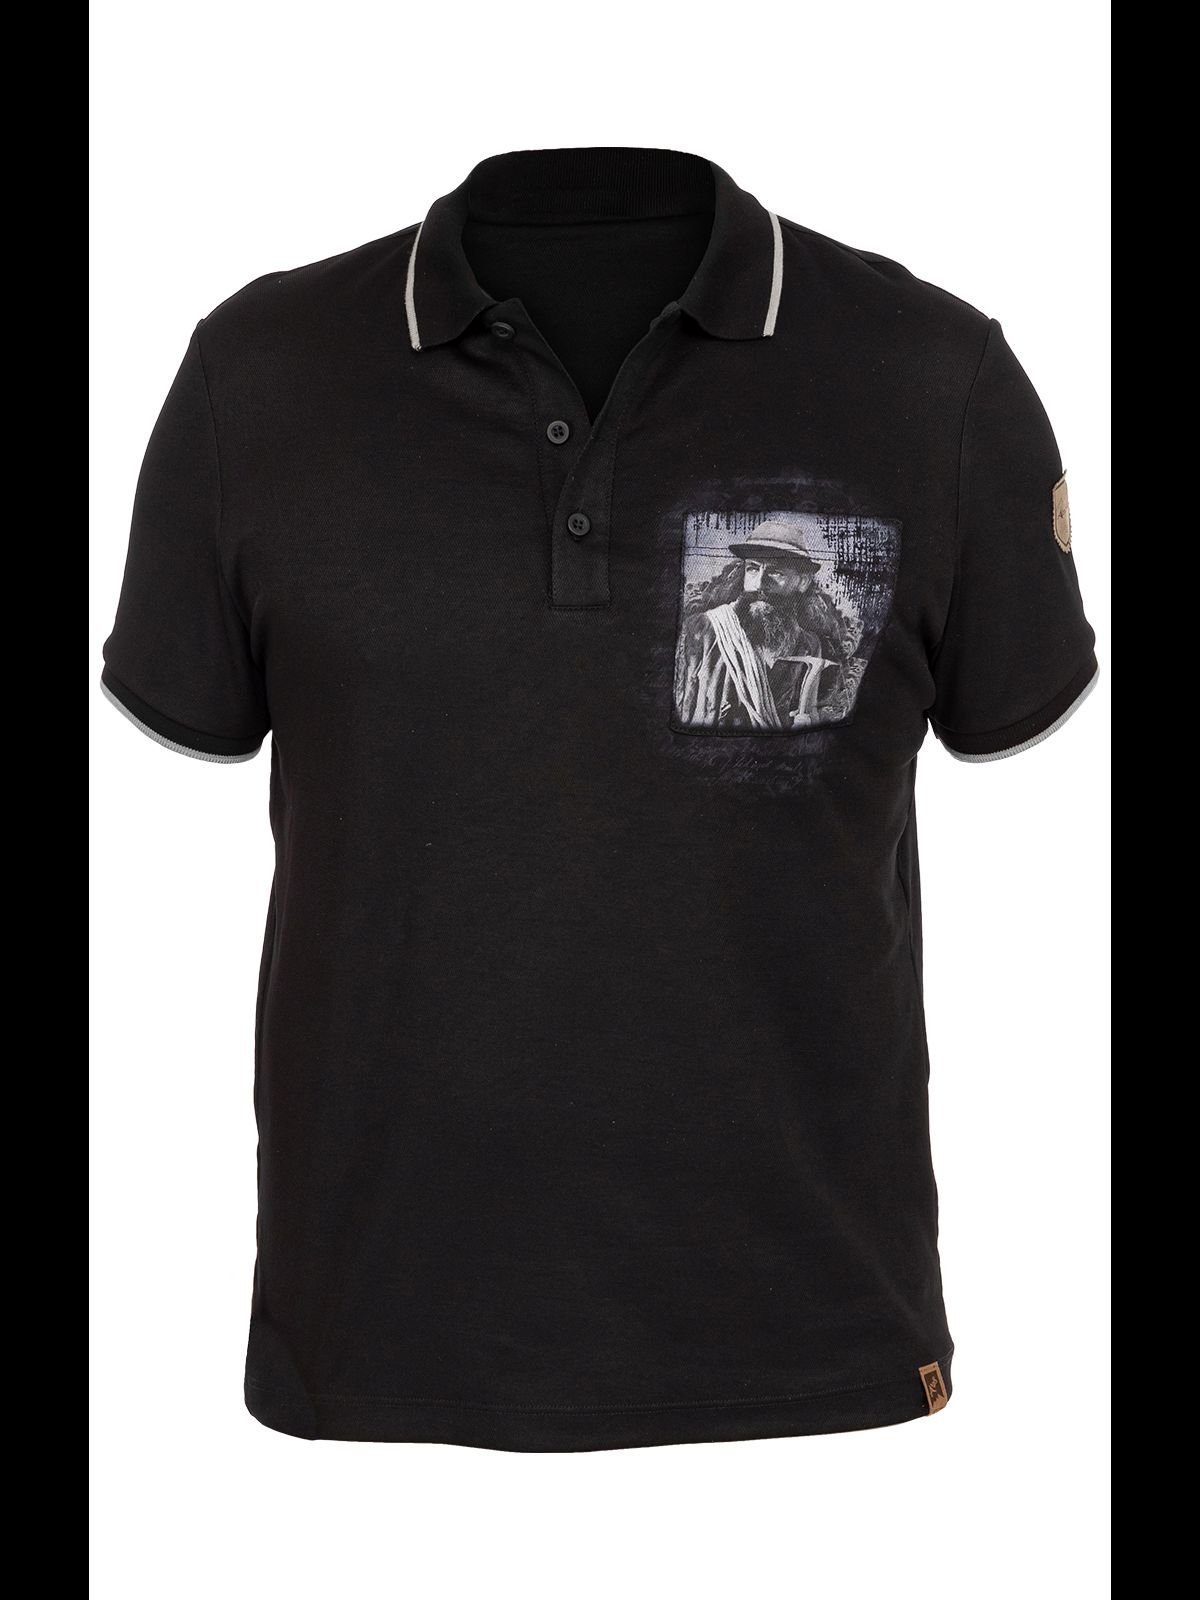 T-Shirt Almgwand schwarz PUTZENTALALM Trachtenshirt